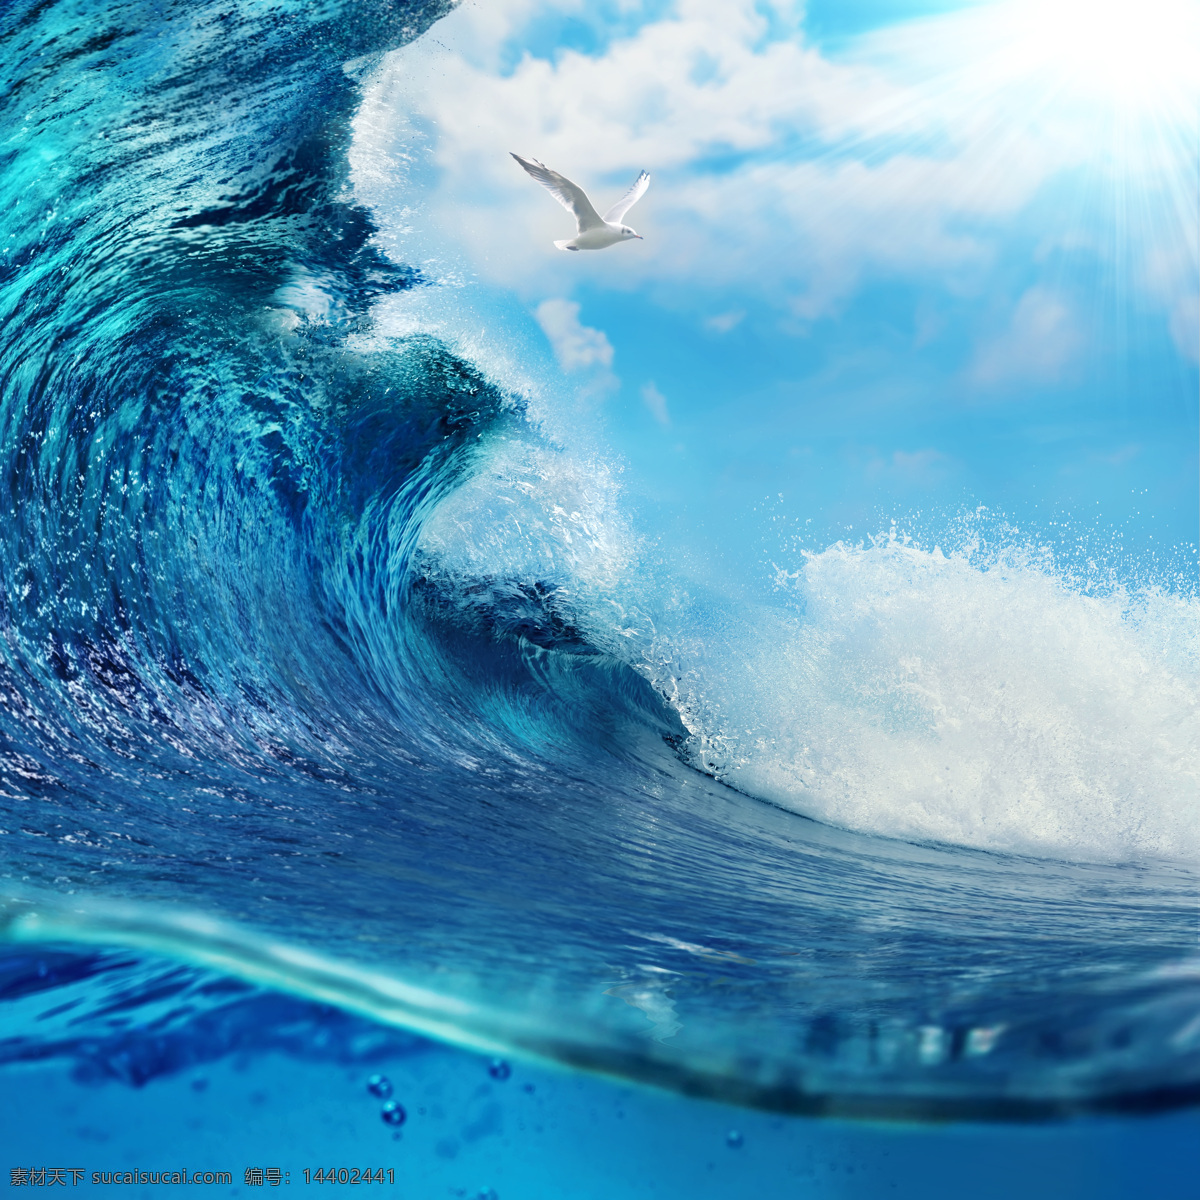 海鸥 海浪 海鸥与海浪 蓝天 白云 天空 大海风景 海洋风景 巨浪 海面风景 海水 波浪 波涛 海洋海边 大海图片 风景图片